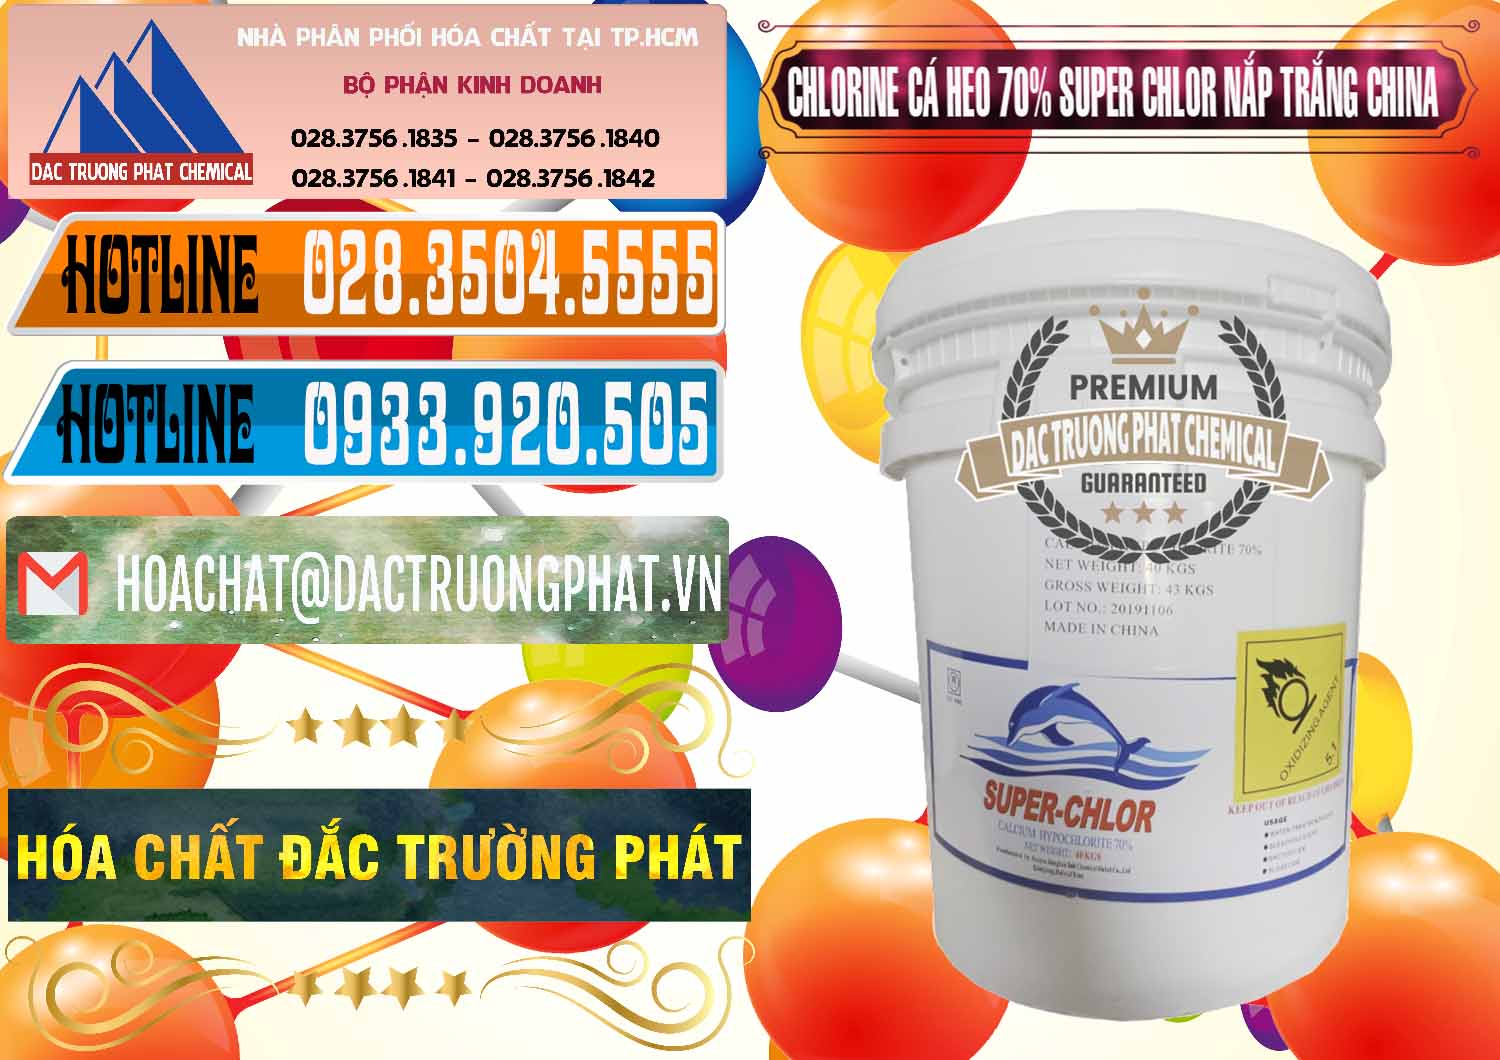 Nhà phân phối & bán Clorin - Chlorine Cá Heo 70% Super Chlor Nắp Trắng Trung Quốc China - 0240 - Cty kinh doanh _ phân phối hóa chất tại TP.HCM - stmp.net